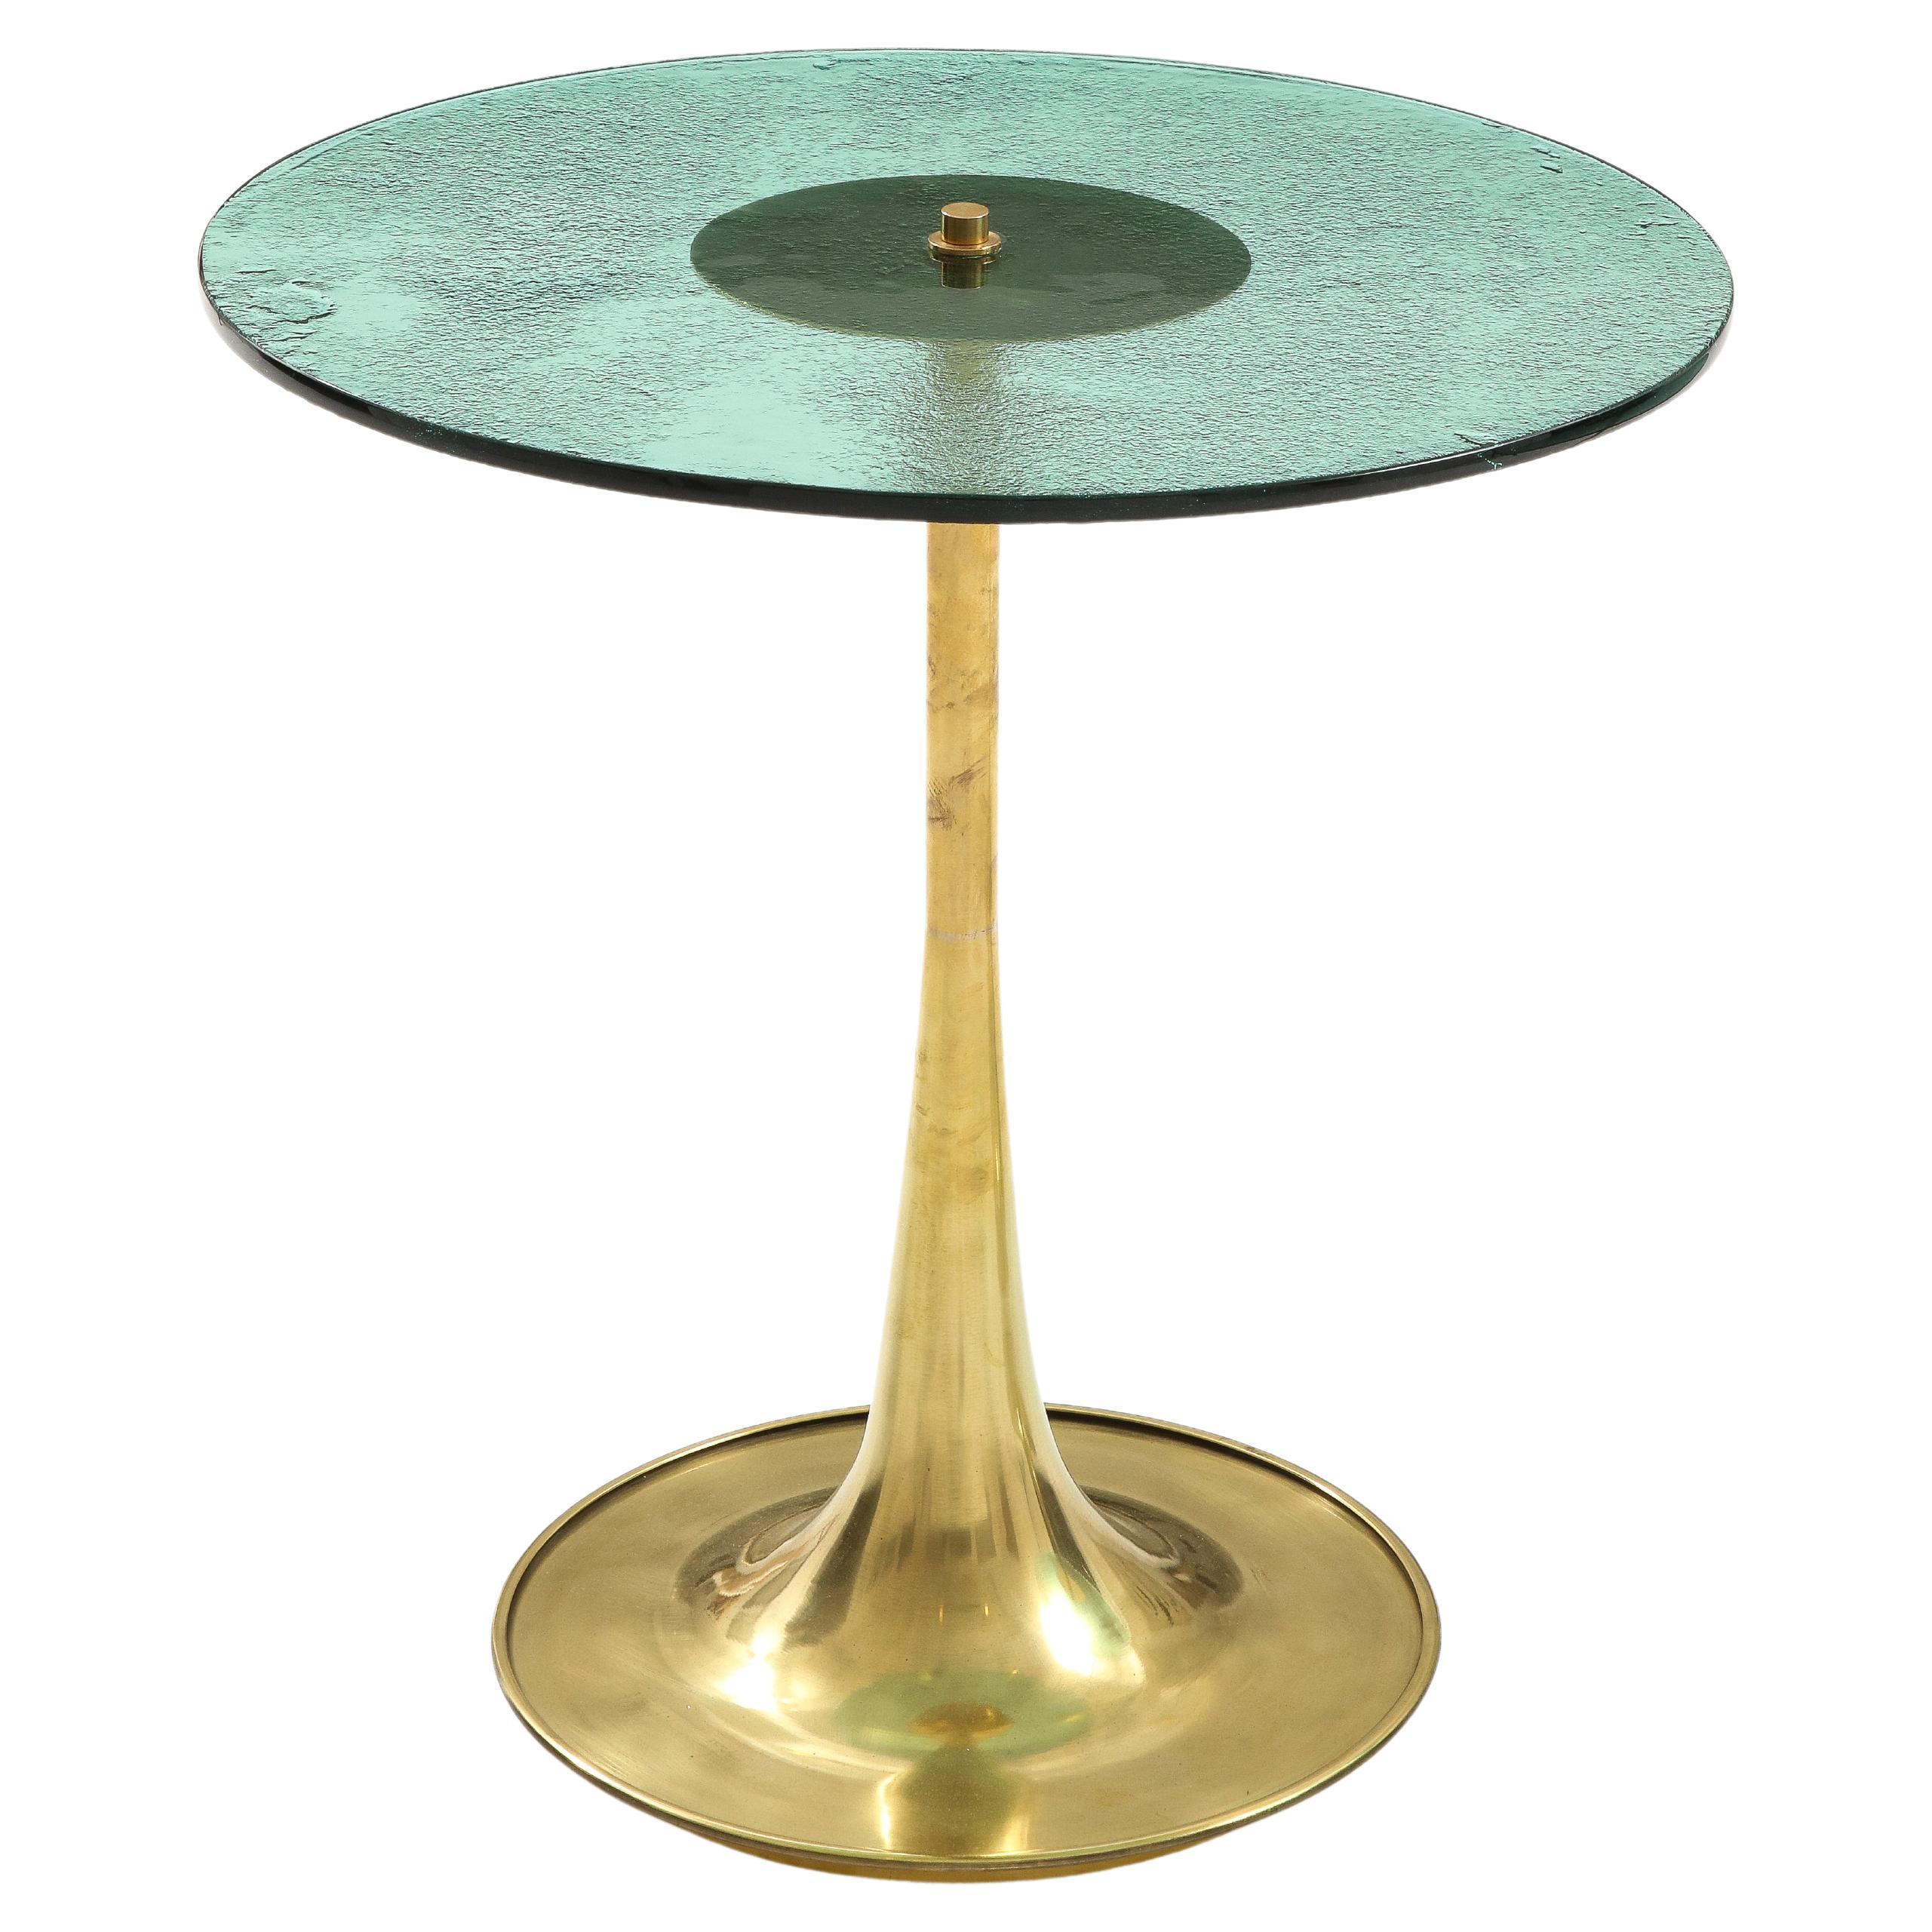 Table à martini ou d'appoint unique ronde en verre de Murano vert tendre et en laiton, Italie, 2023. Le verre rond de Murano de 12 mm de diamètre, coulé à la main et de couleur vert tendre, est posé sur une base en laiton en forme de trompette,